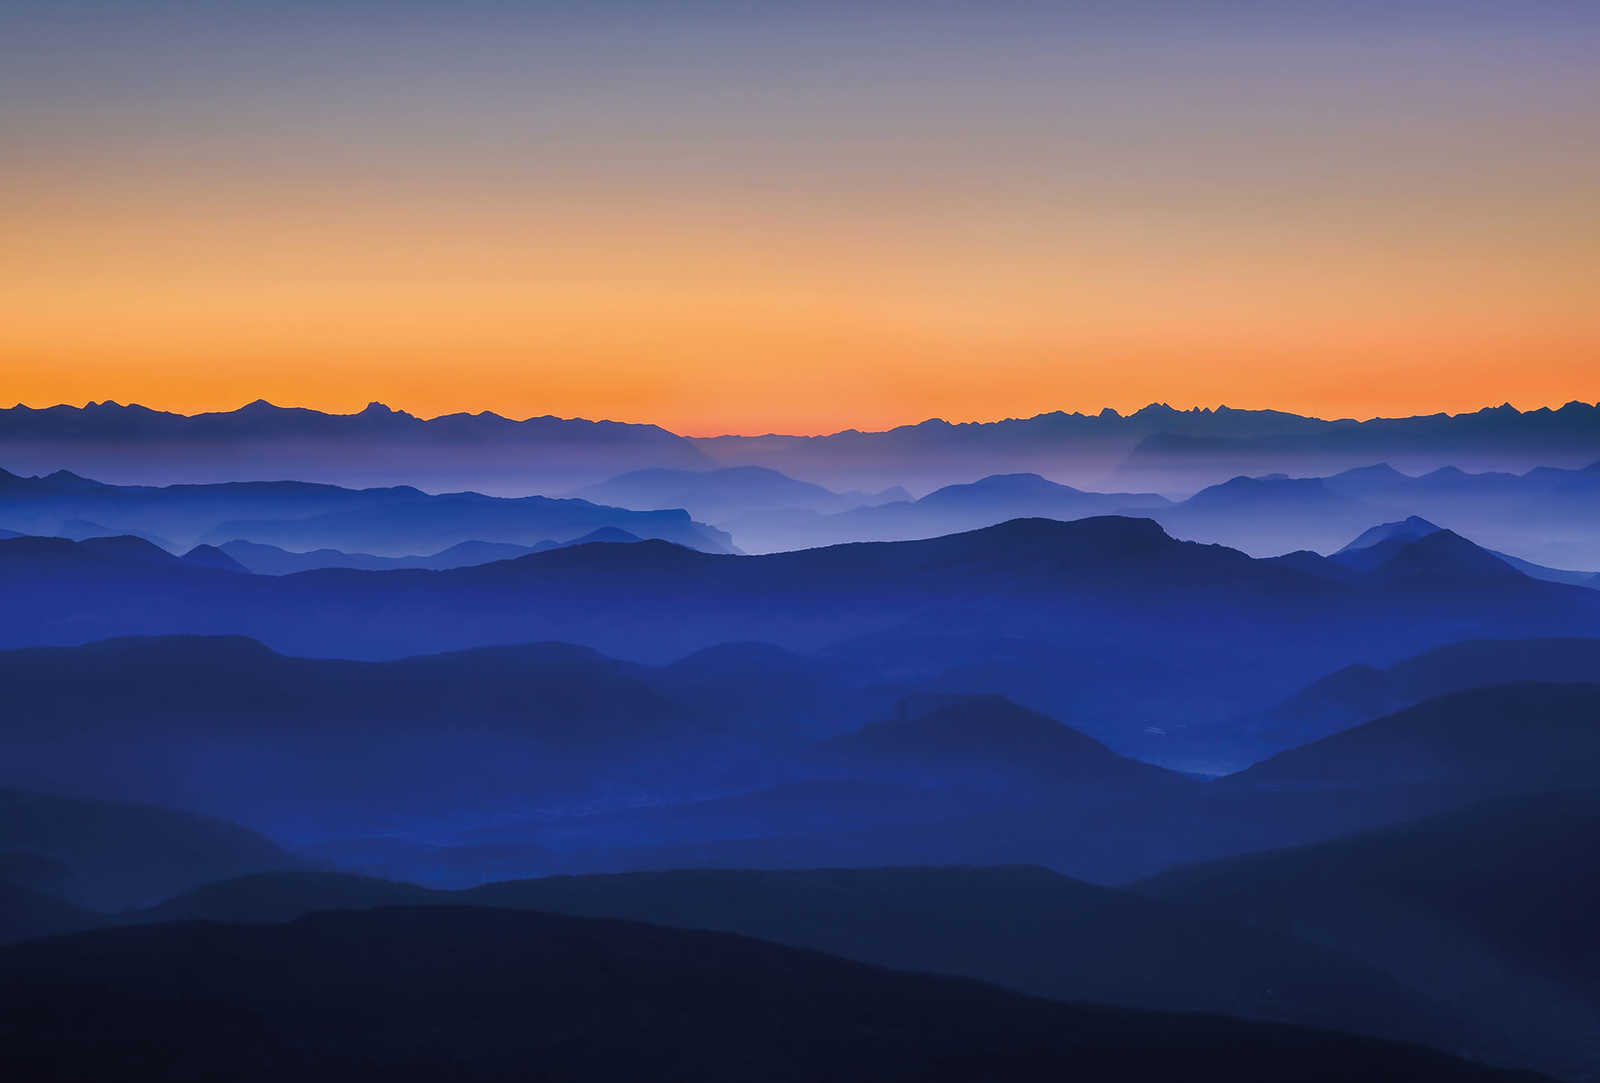 Fototapete Berge bei Sonnenaufgang – Blau, Orange, Gelb
